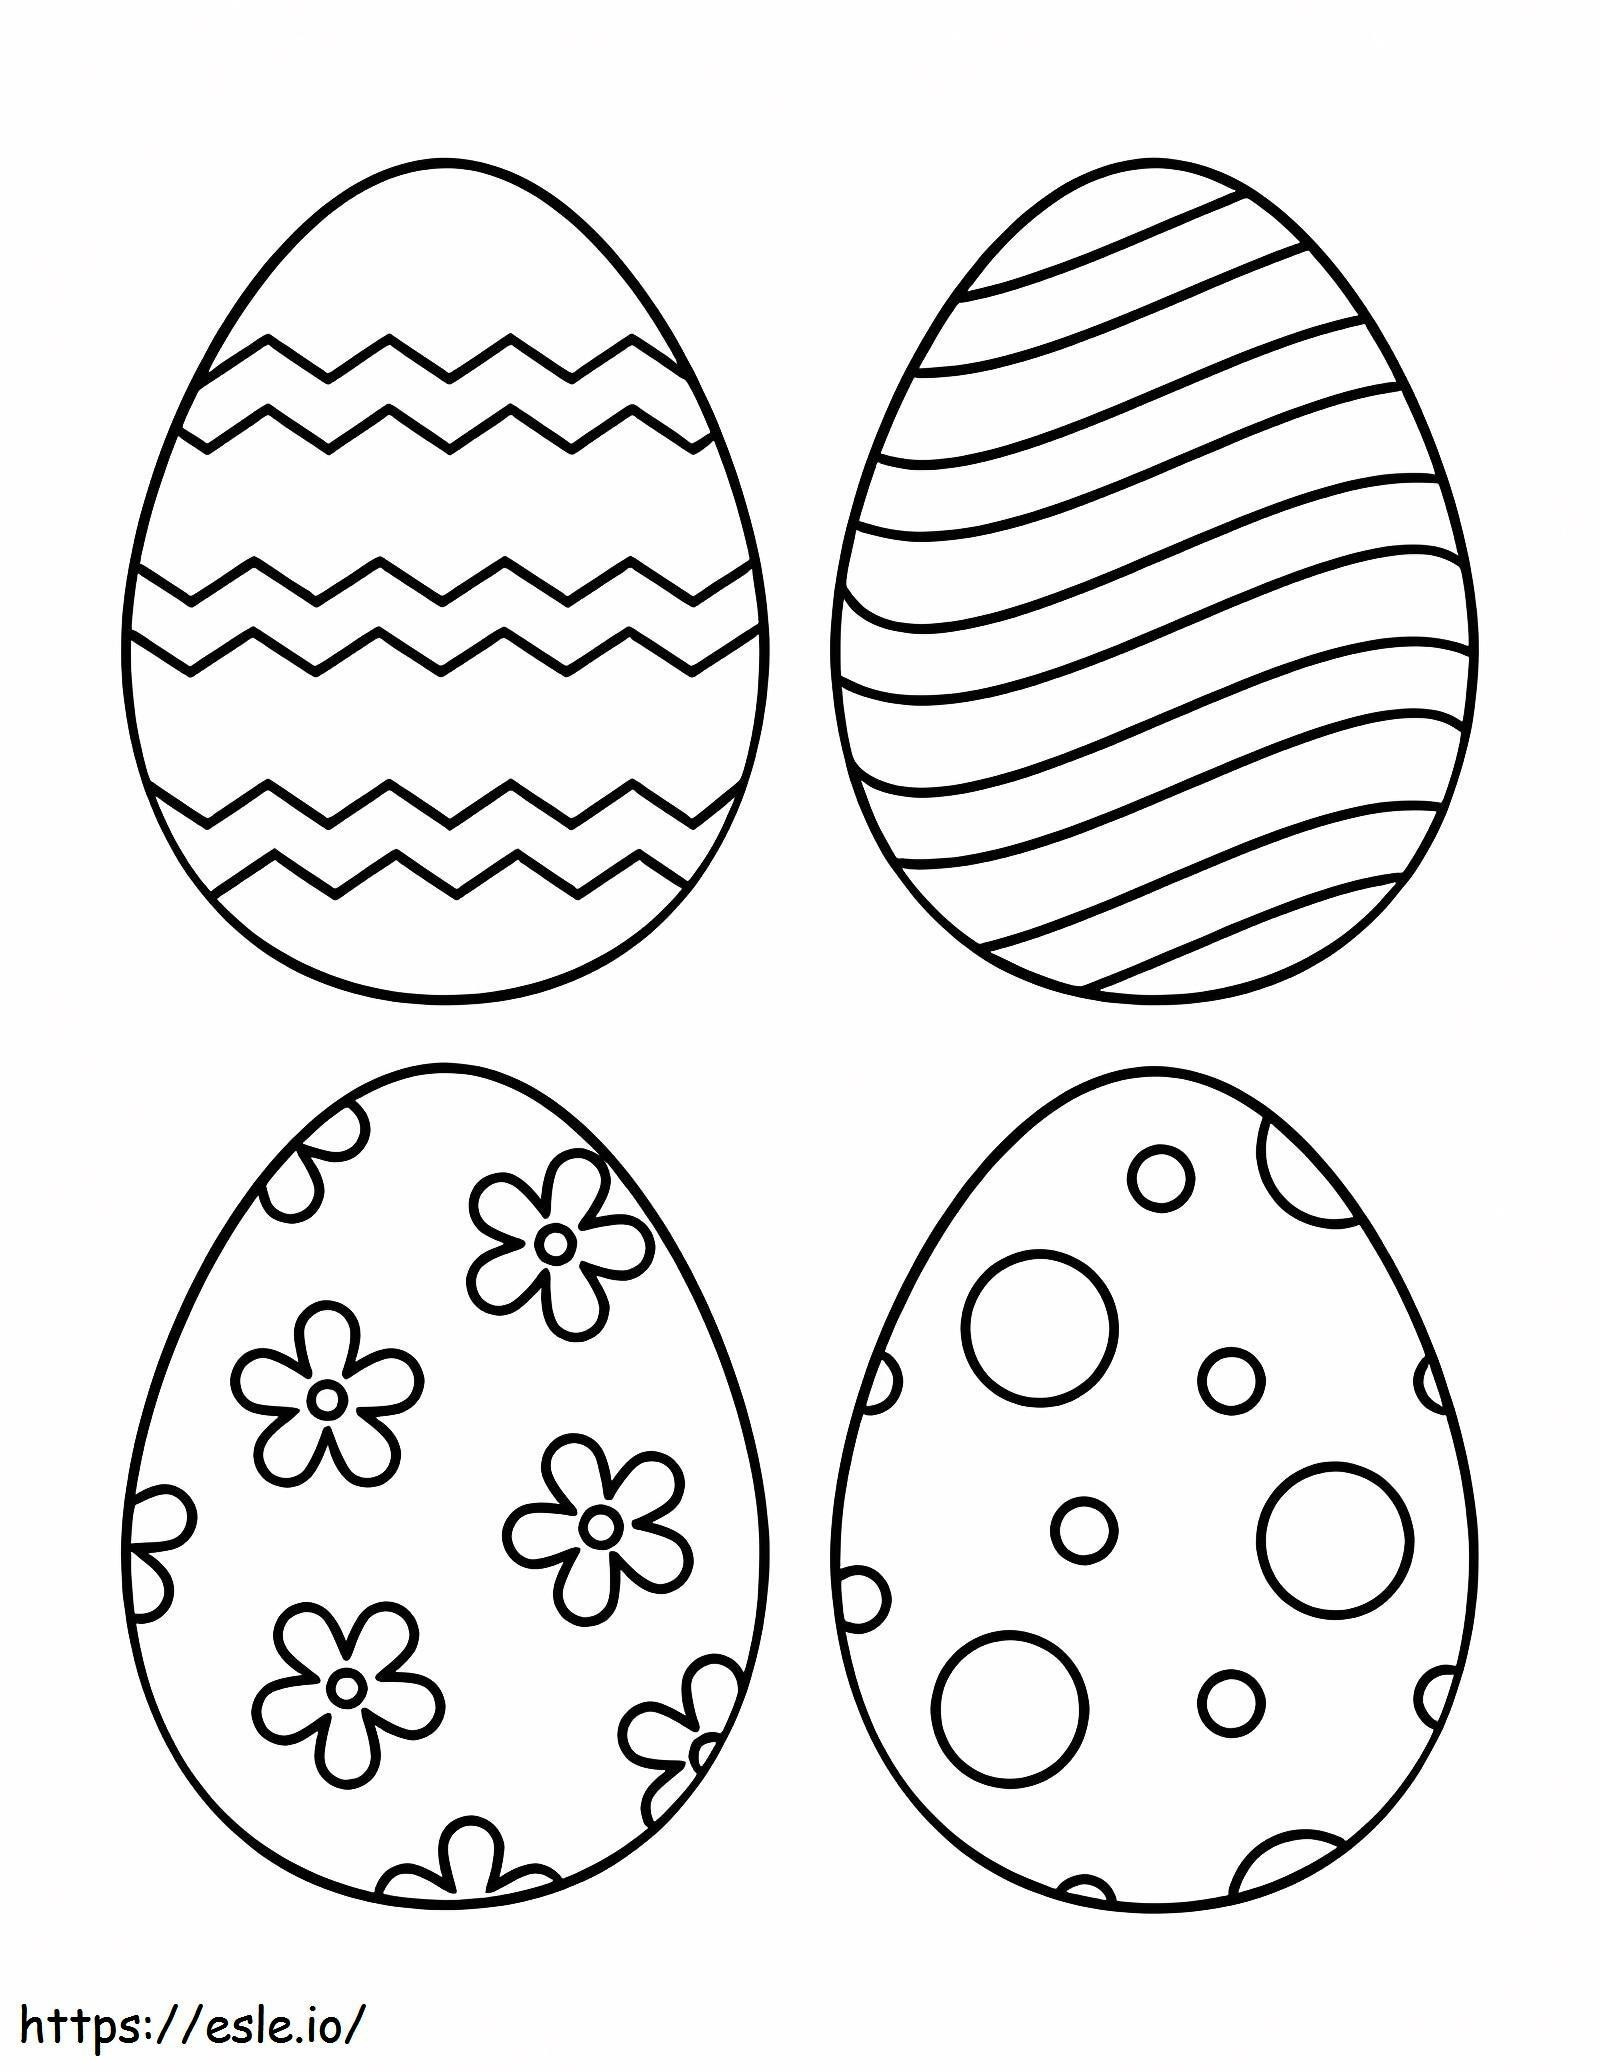 Cuatro huevos de Pascua para colorear